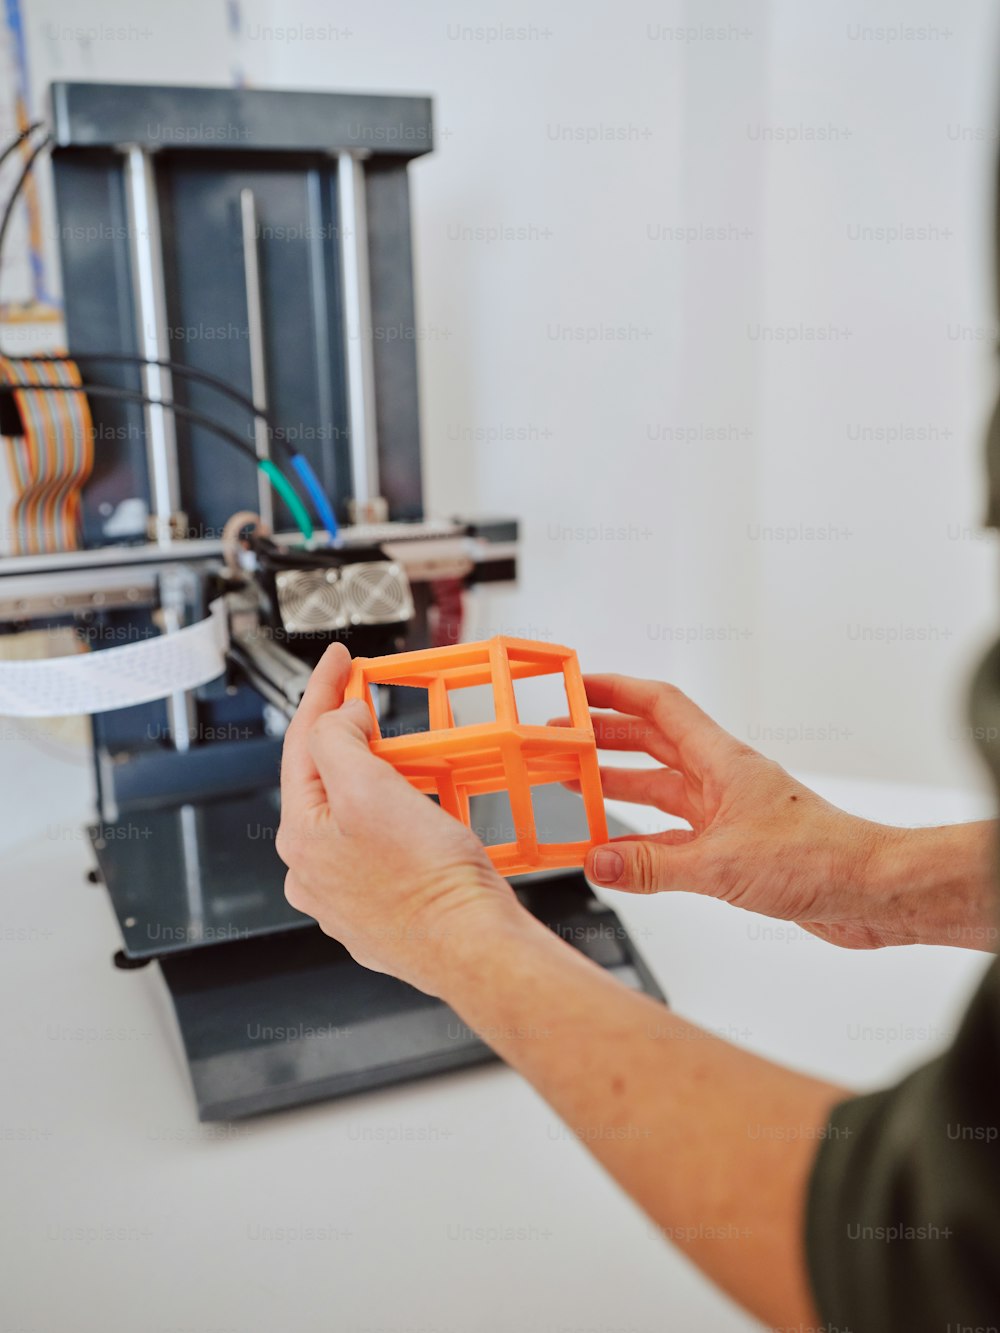 Una persona sta lavorando su una stampante 3D